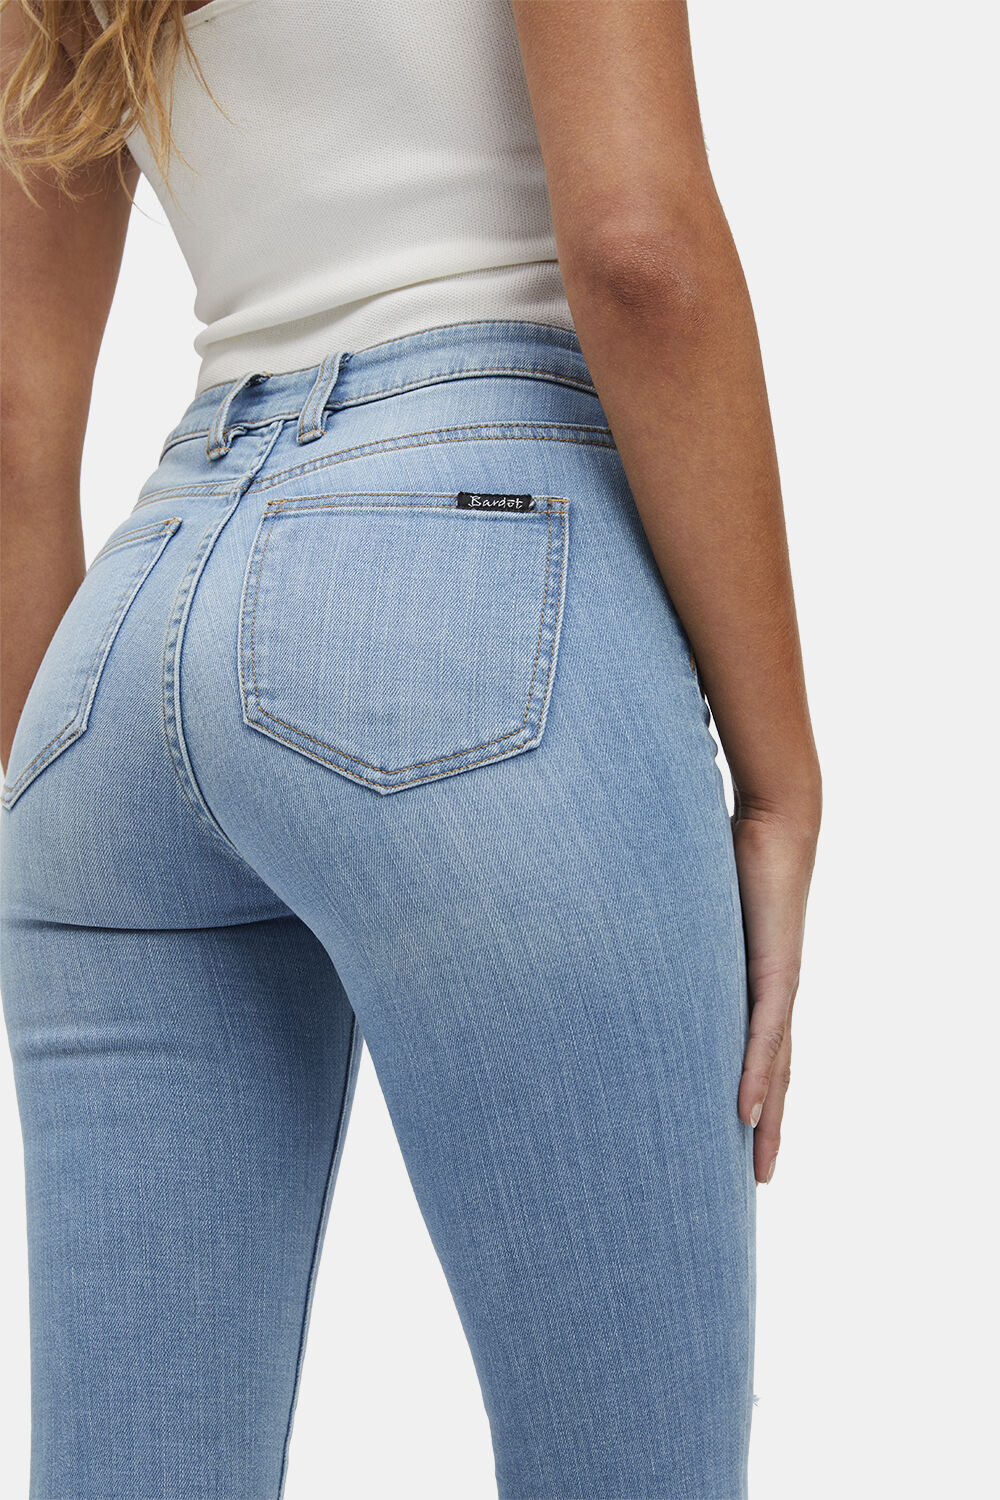 bardot khloe jeans